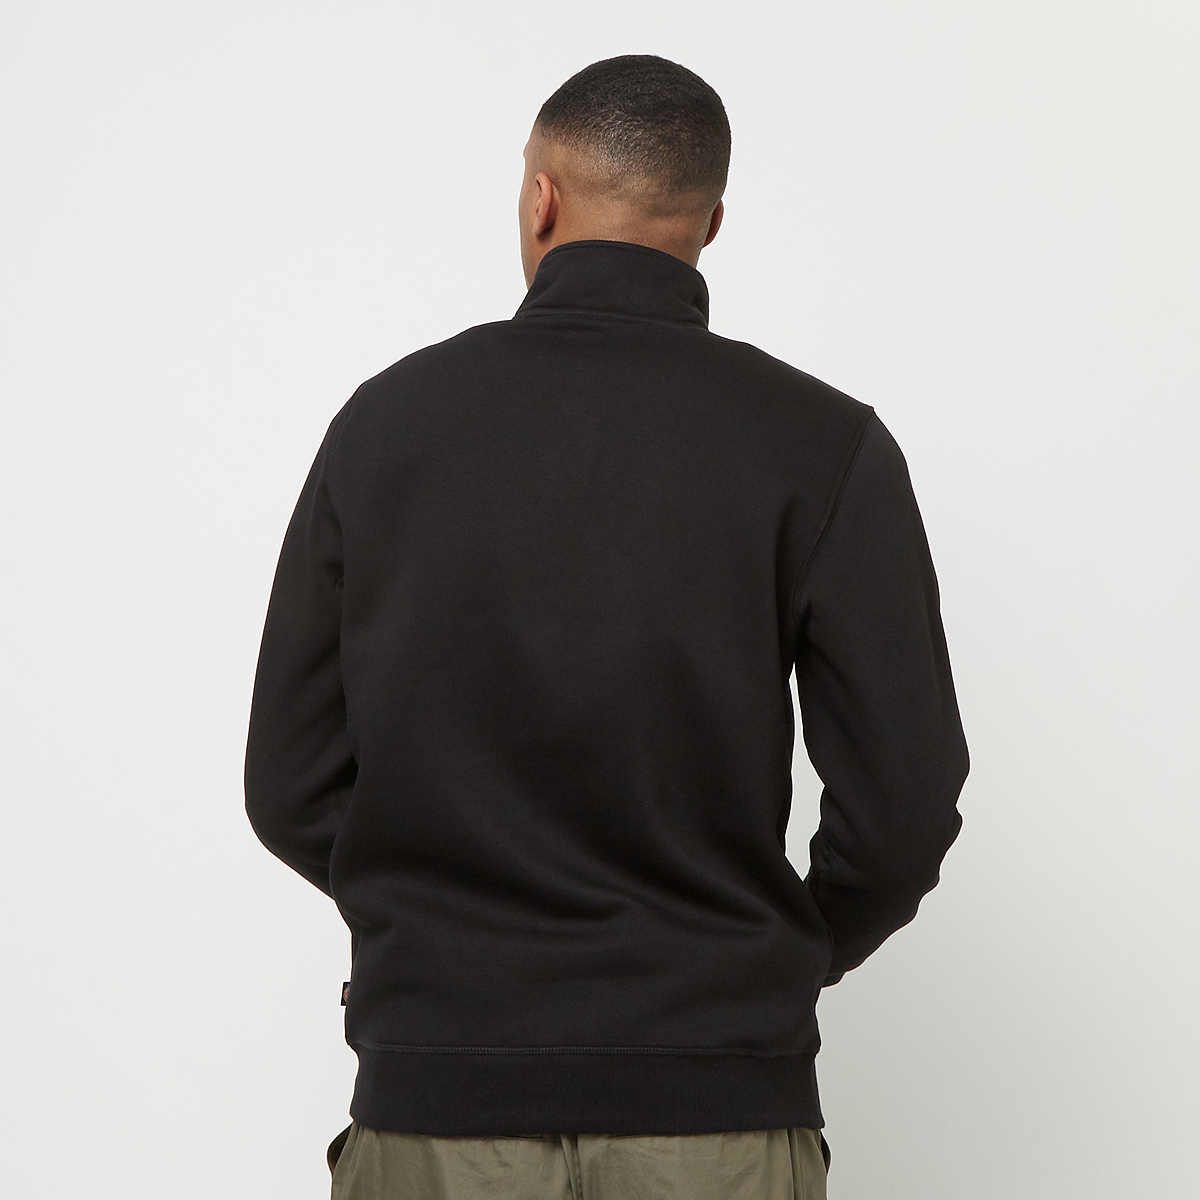 Dickies Oakport Quarter Zip Hooded vesten Kleding Black maat: S beschikbare maaten:S M L XL